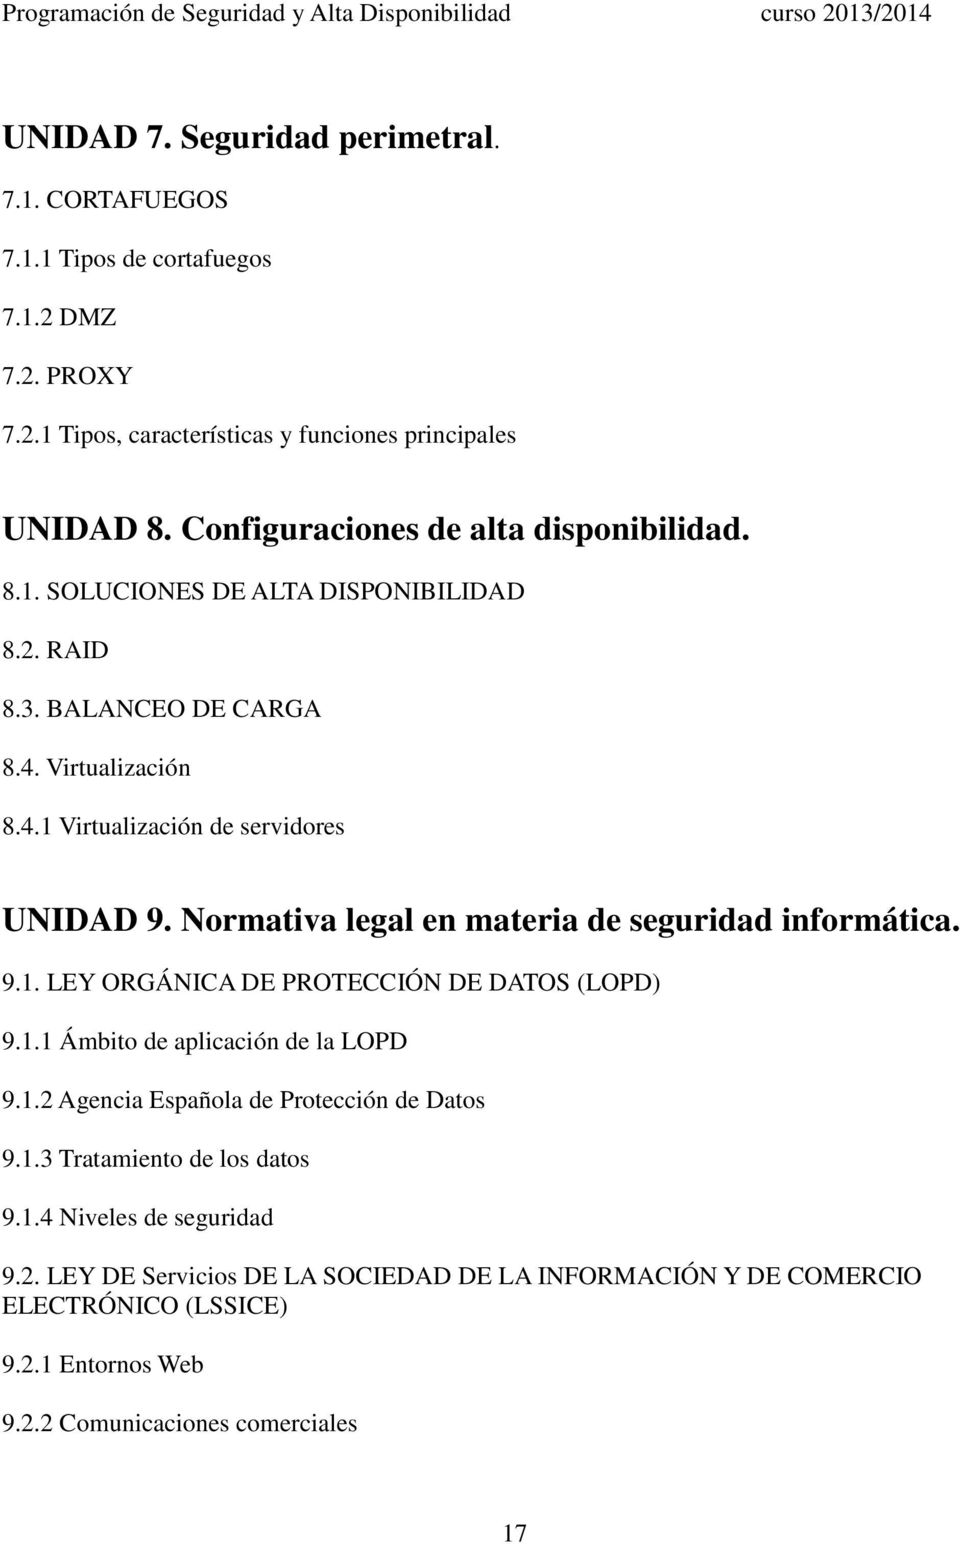 Normativa legal en materia de seguridad informática. 9.1. LEY ORGÁNICA DE PROTECCIÓN DE DATOS (LOPD) 9.1.1 Ámbito de aplicación de la LOPD 9.1.2 Agencia Española de Protección de Datos 9.